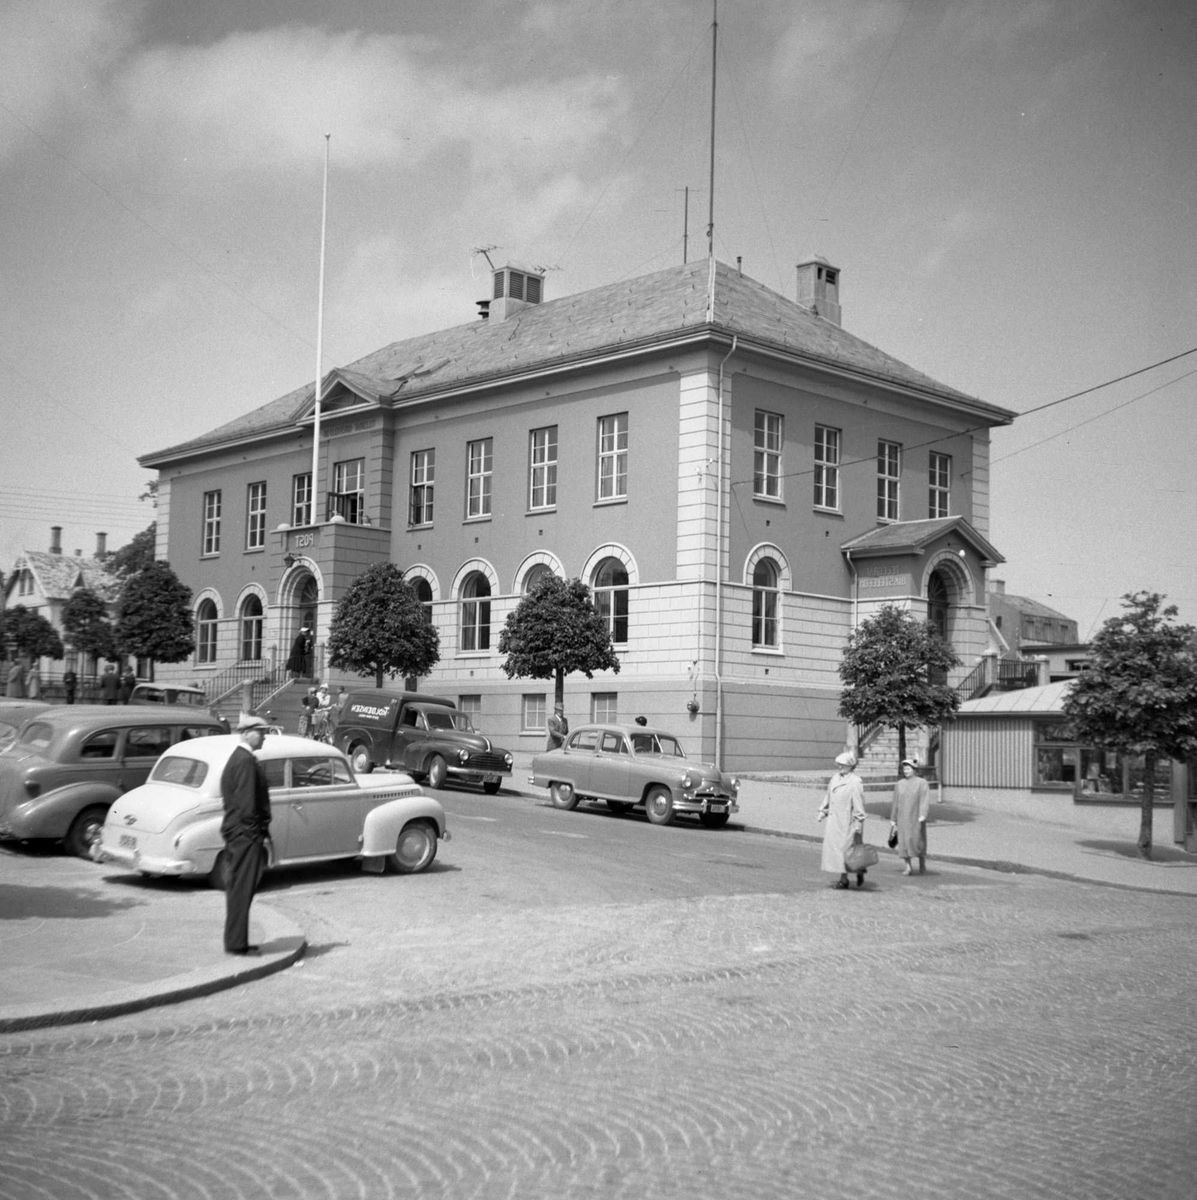 Postkontoret i Haugesund sett fra sørøst .(Krysset Torggt./Sørhauggt.). Til h. for bygningen flere biler.